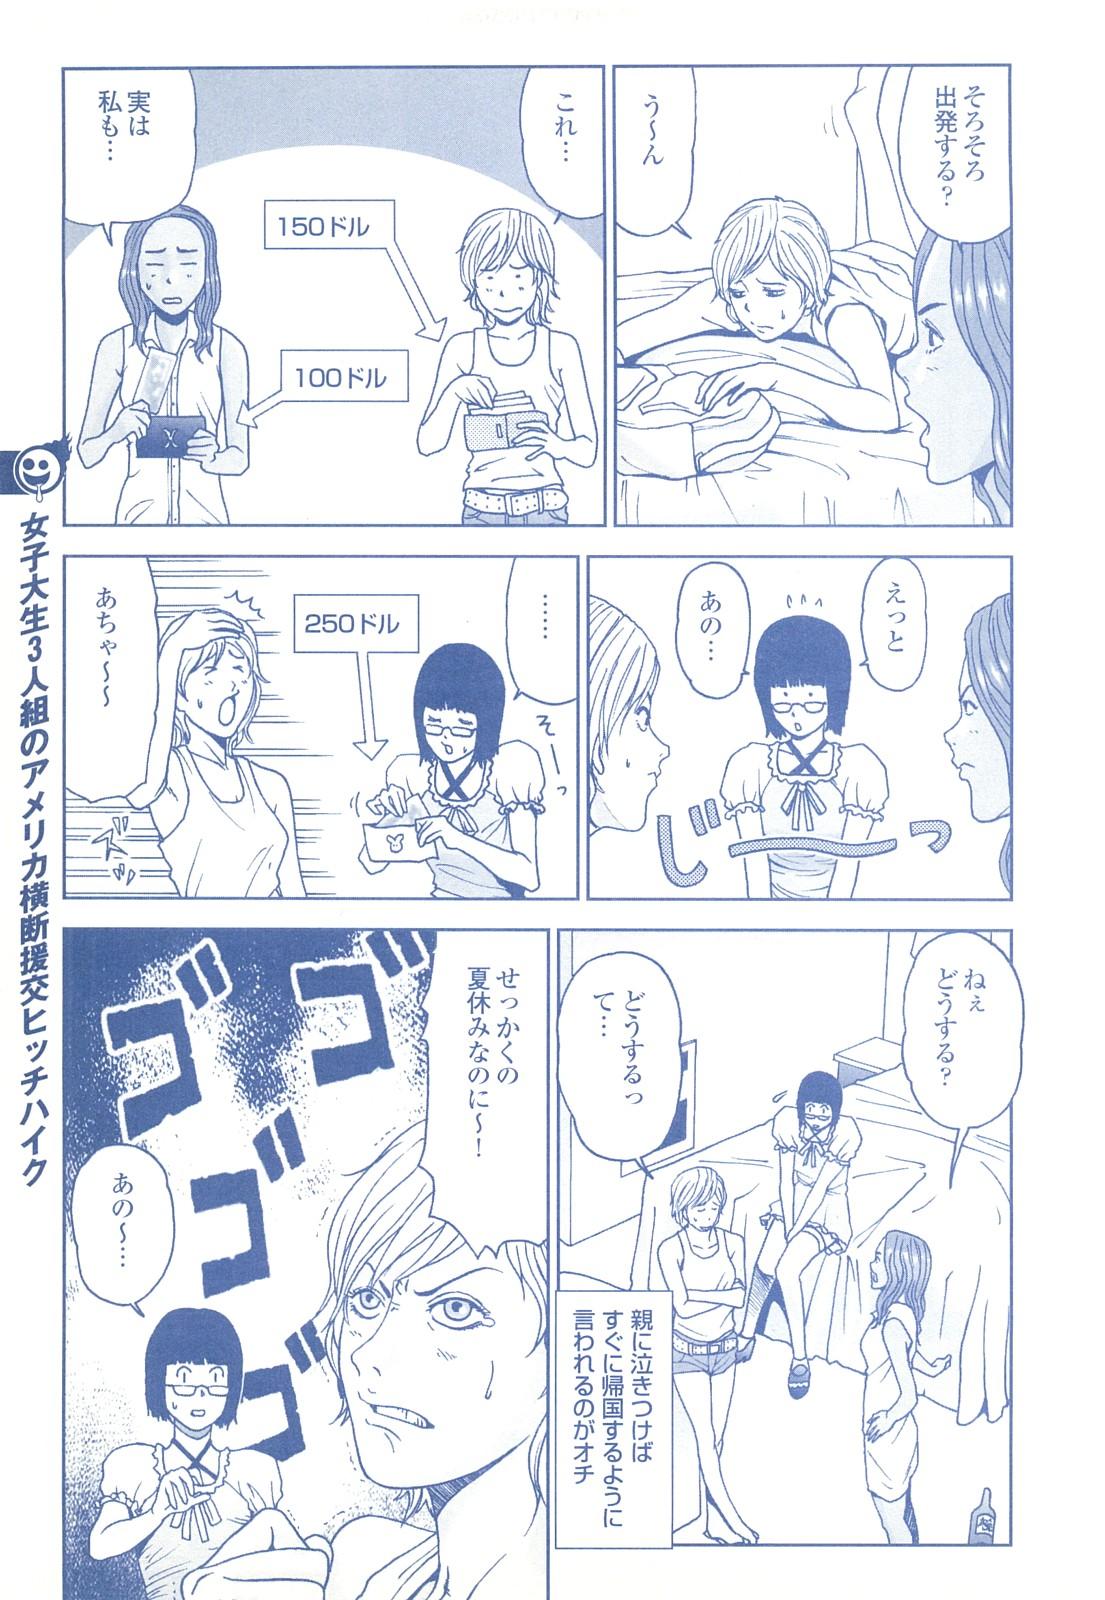 コミック裏モノJAPAN Vol.18 今井のりたつスペシャル号 214